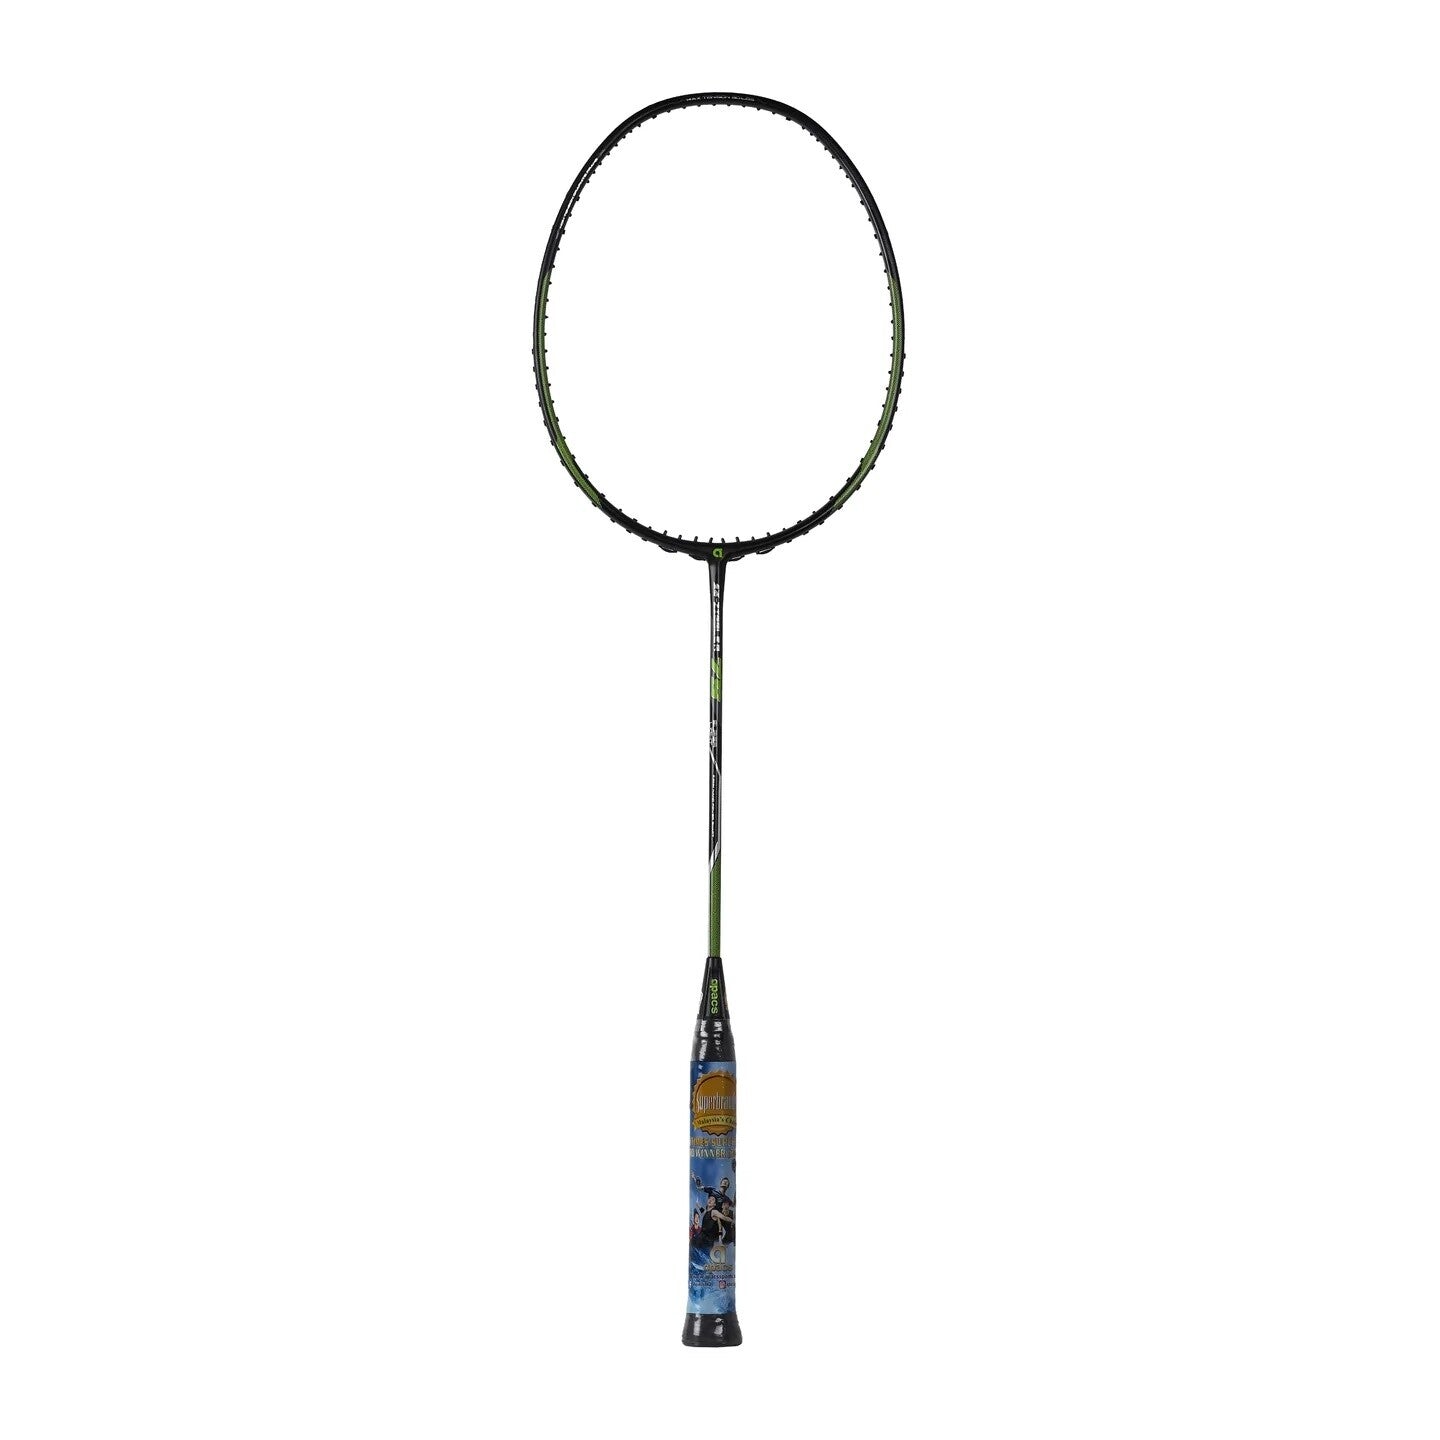 APACS Z Ziggler 75 Badminton Racket